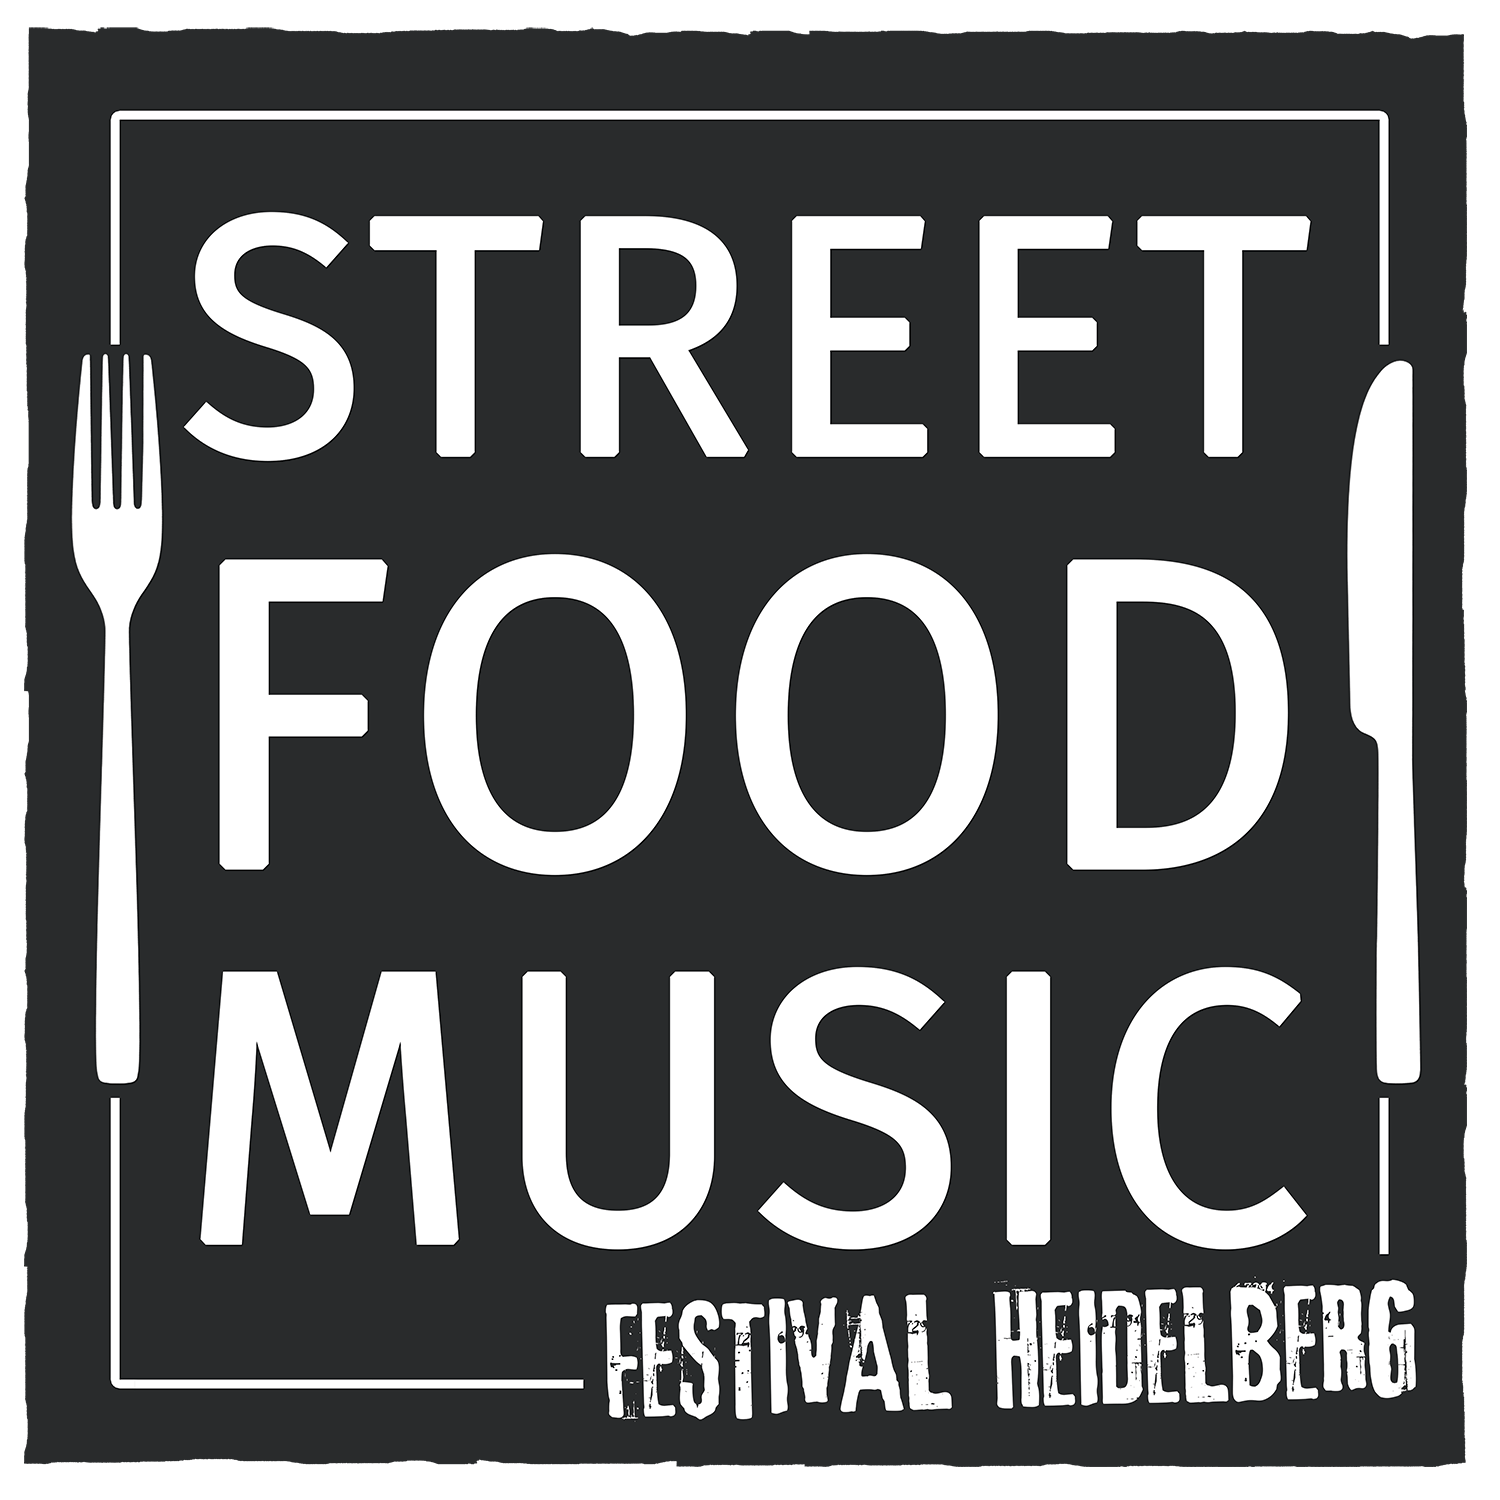 Street Food & Music Festival Heidelberg